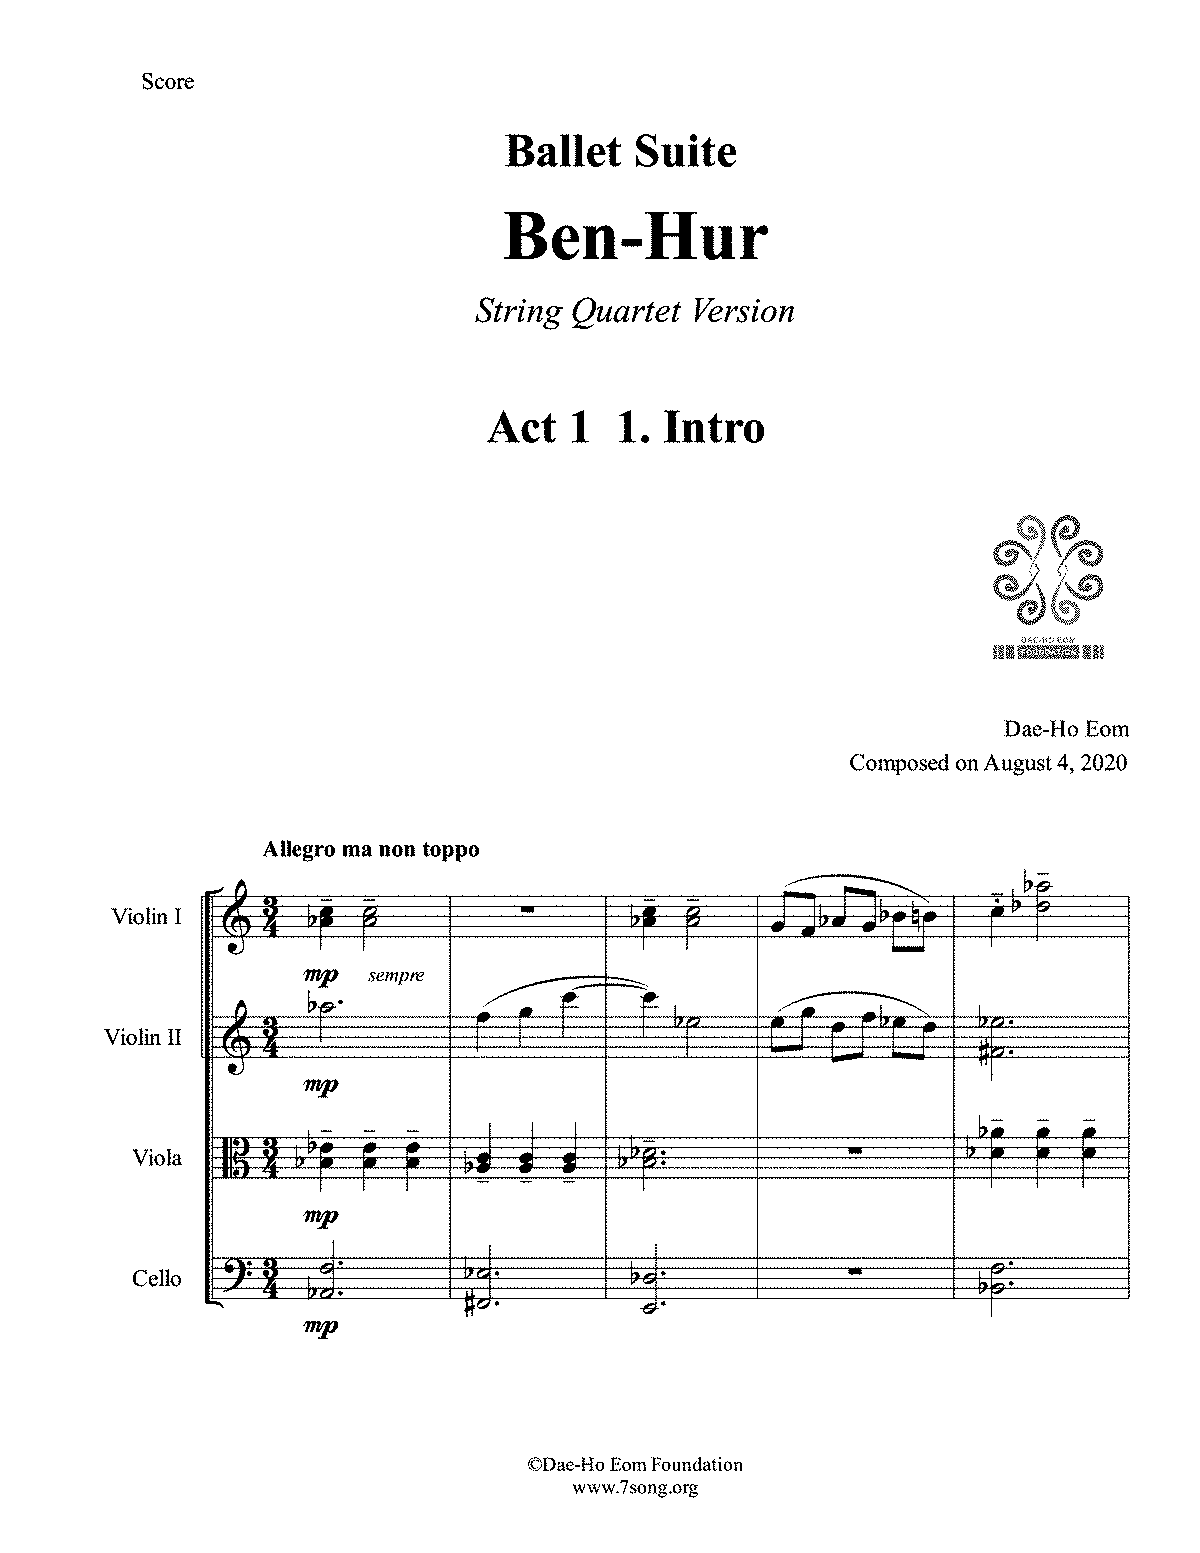 Ben-Hur Ballet Suite for String Quartet (Eom, Dae-Ho) - IMSLP: Free ...